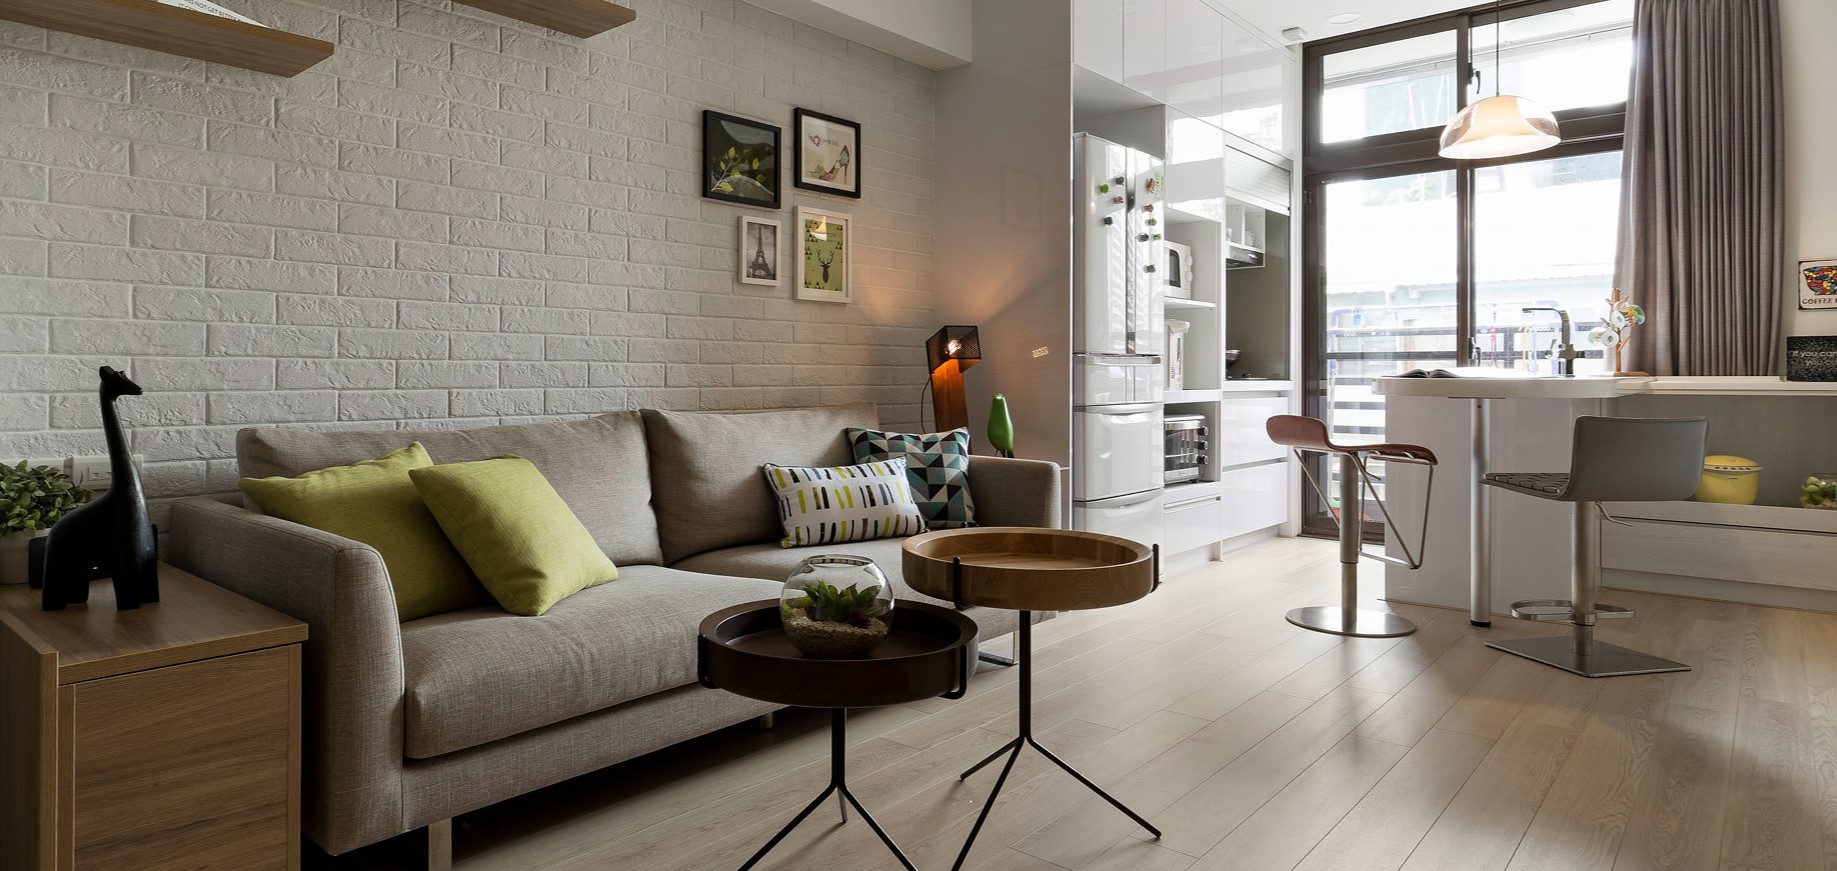 Оригинальная дизайнерская мебель в интерьере современной квартиры